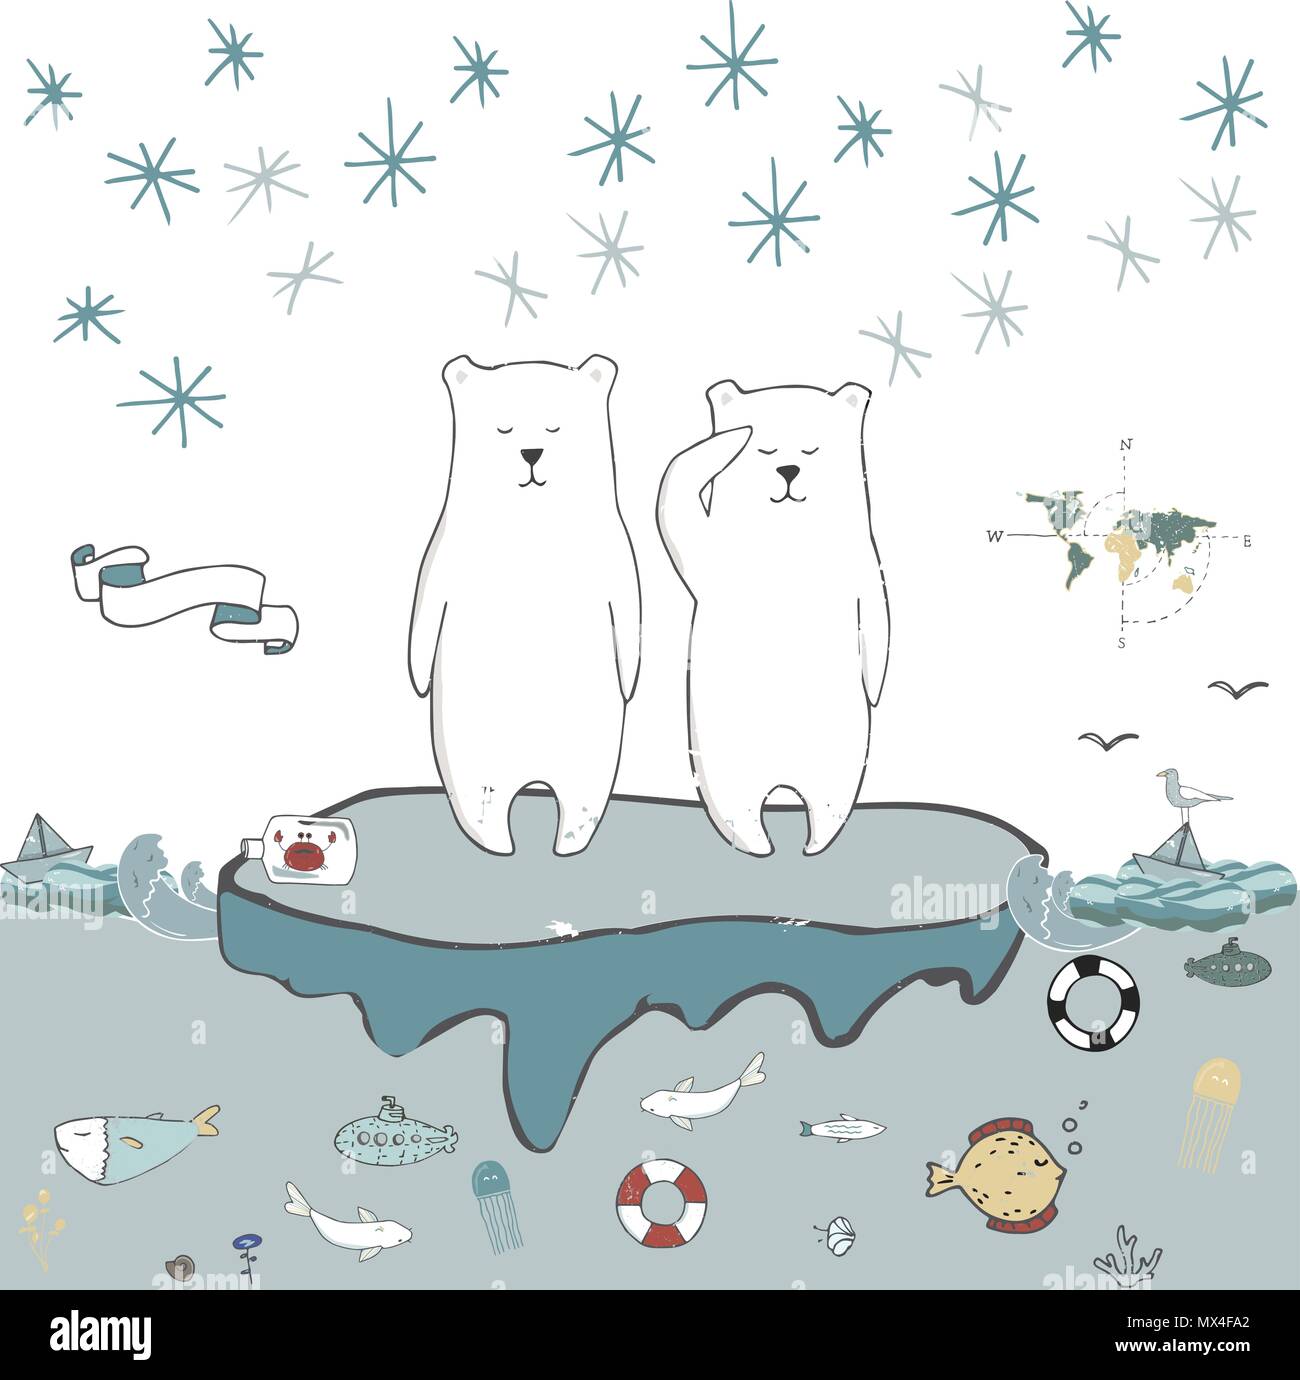 Polar bearS on an ice floe vector gift card Stock Vector